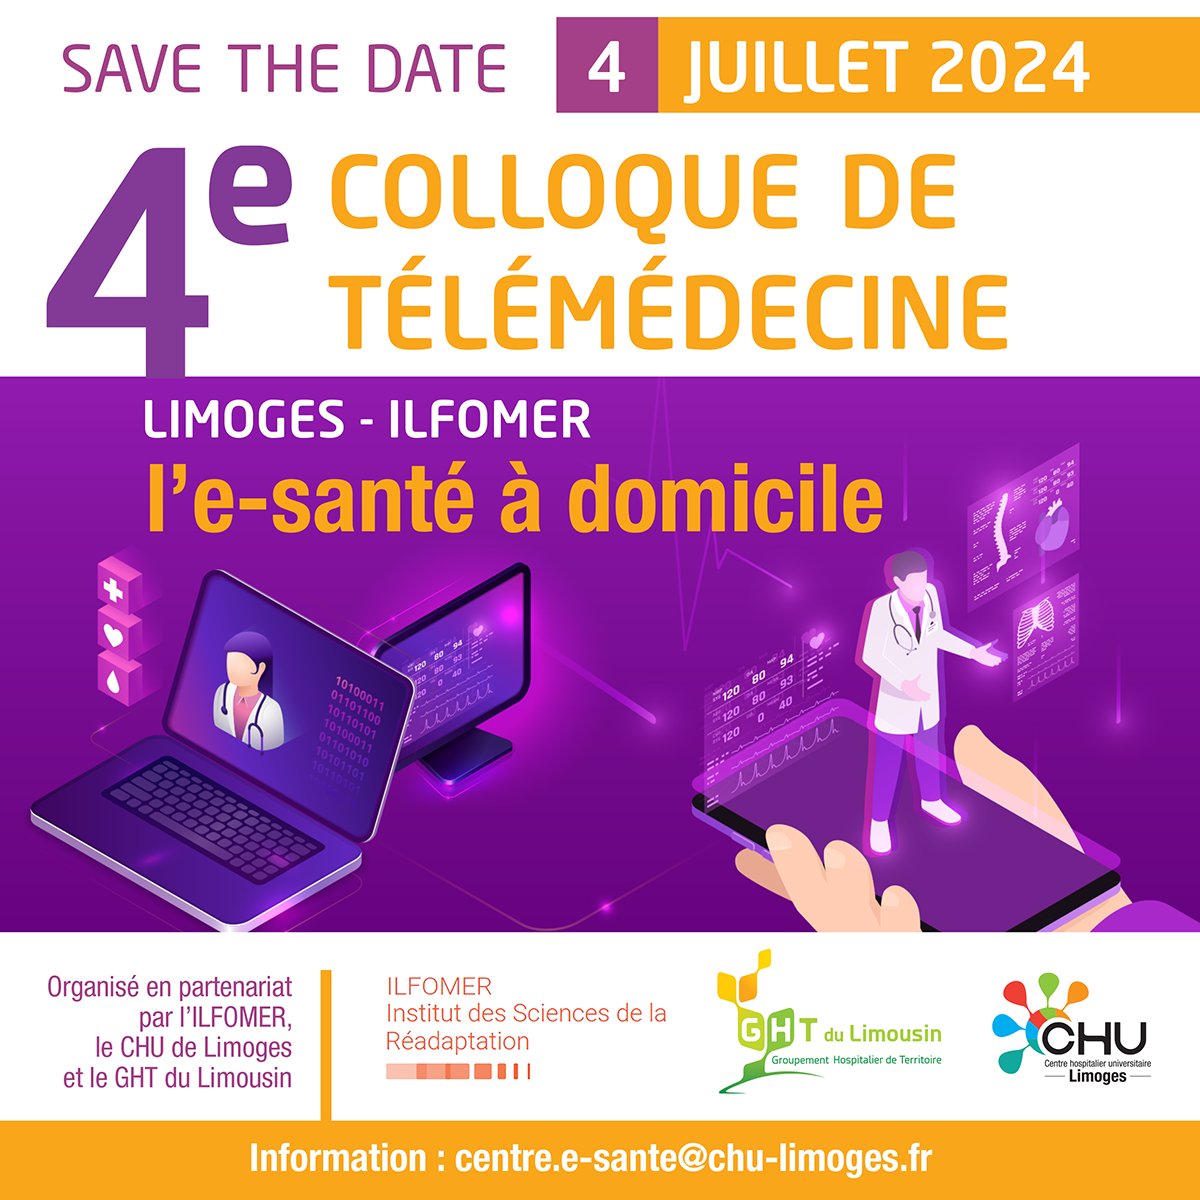 [COLLOQUE TÉLÉMÉDECINE] 📢 Save the date! Le 4ème Colloque de télémédecine aura lieu le 4 juillet 2024 à Limoges, dans les locaux de l’@ilfomer. 🏠 Cette année, le thème de la journée sera l'e-santé à domicile.